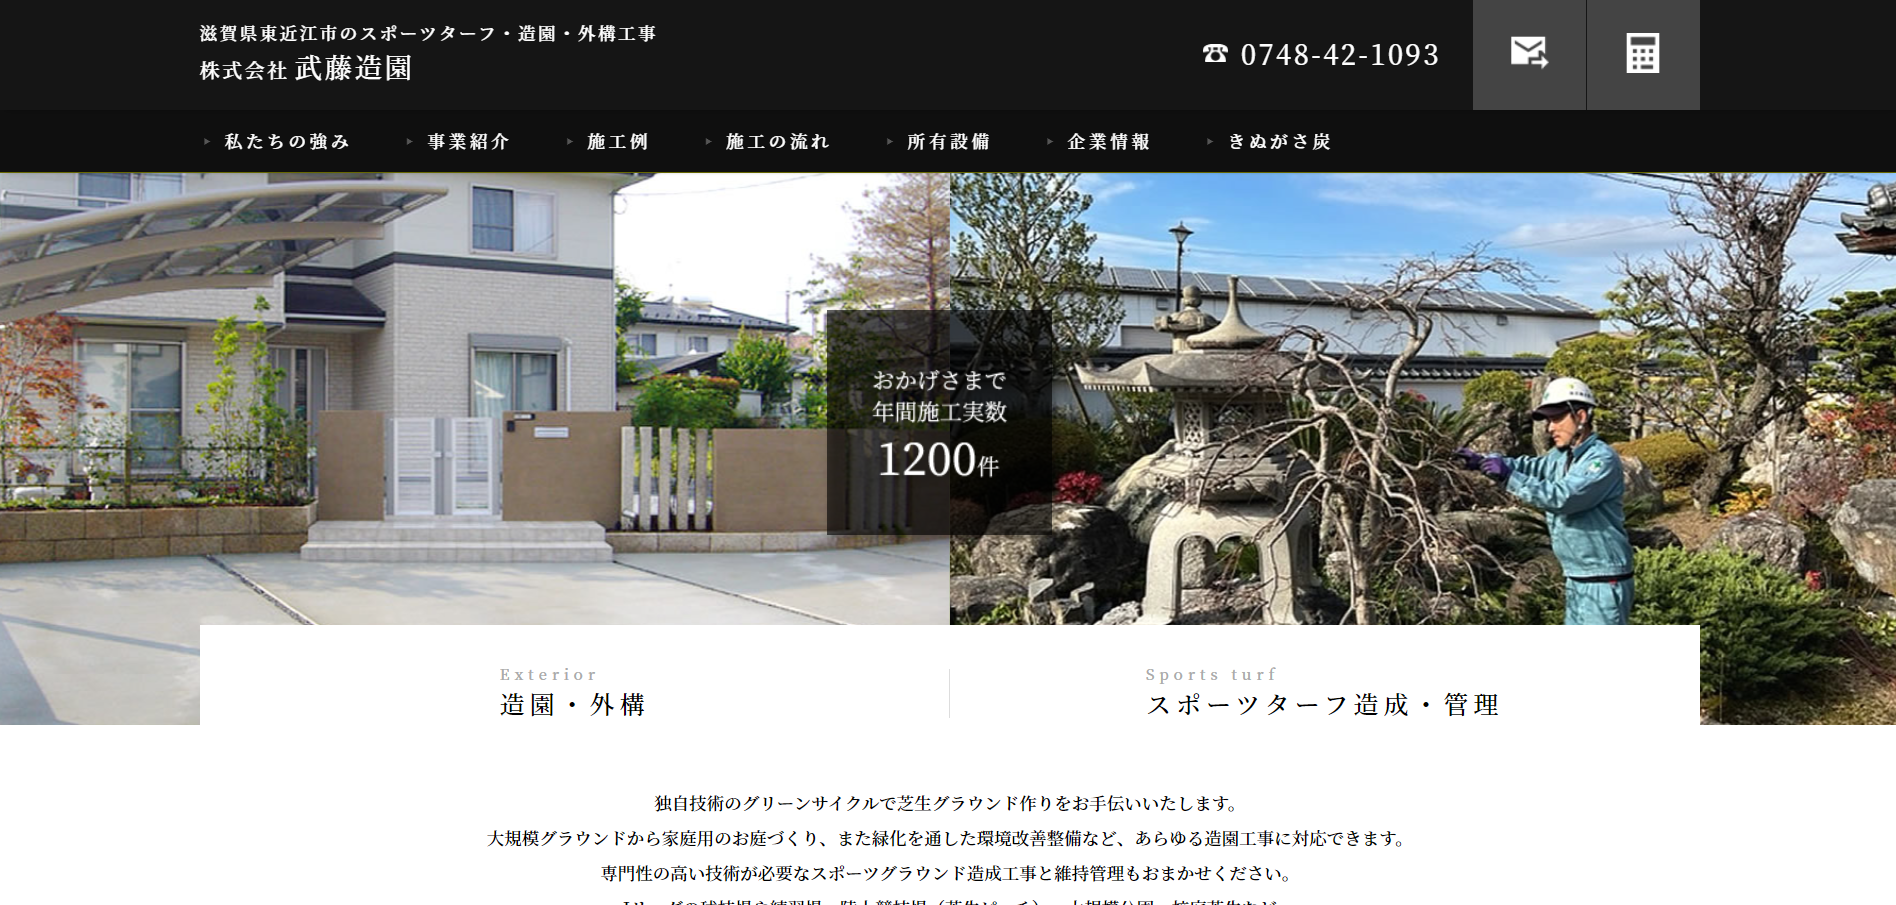 滋賀県で評判のおすすめ外構業者ランキング 第6位 株式会社 武藤造園